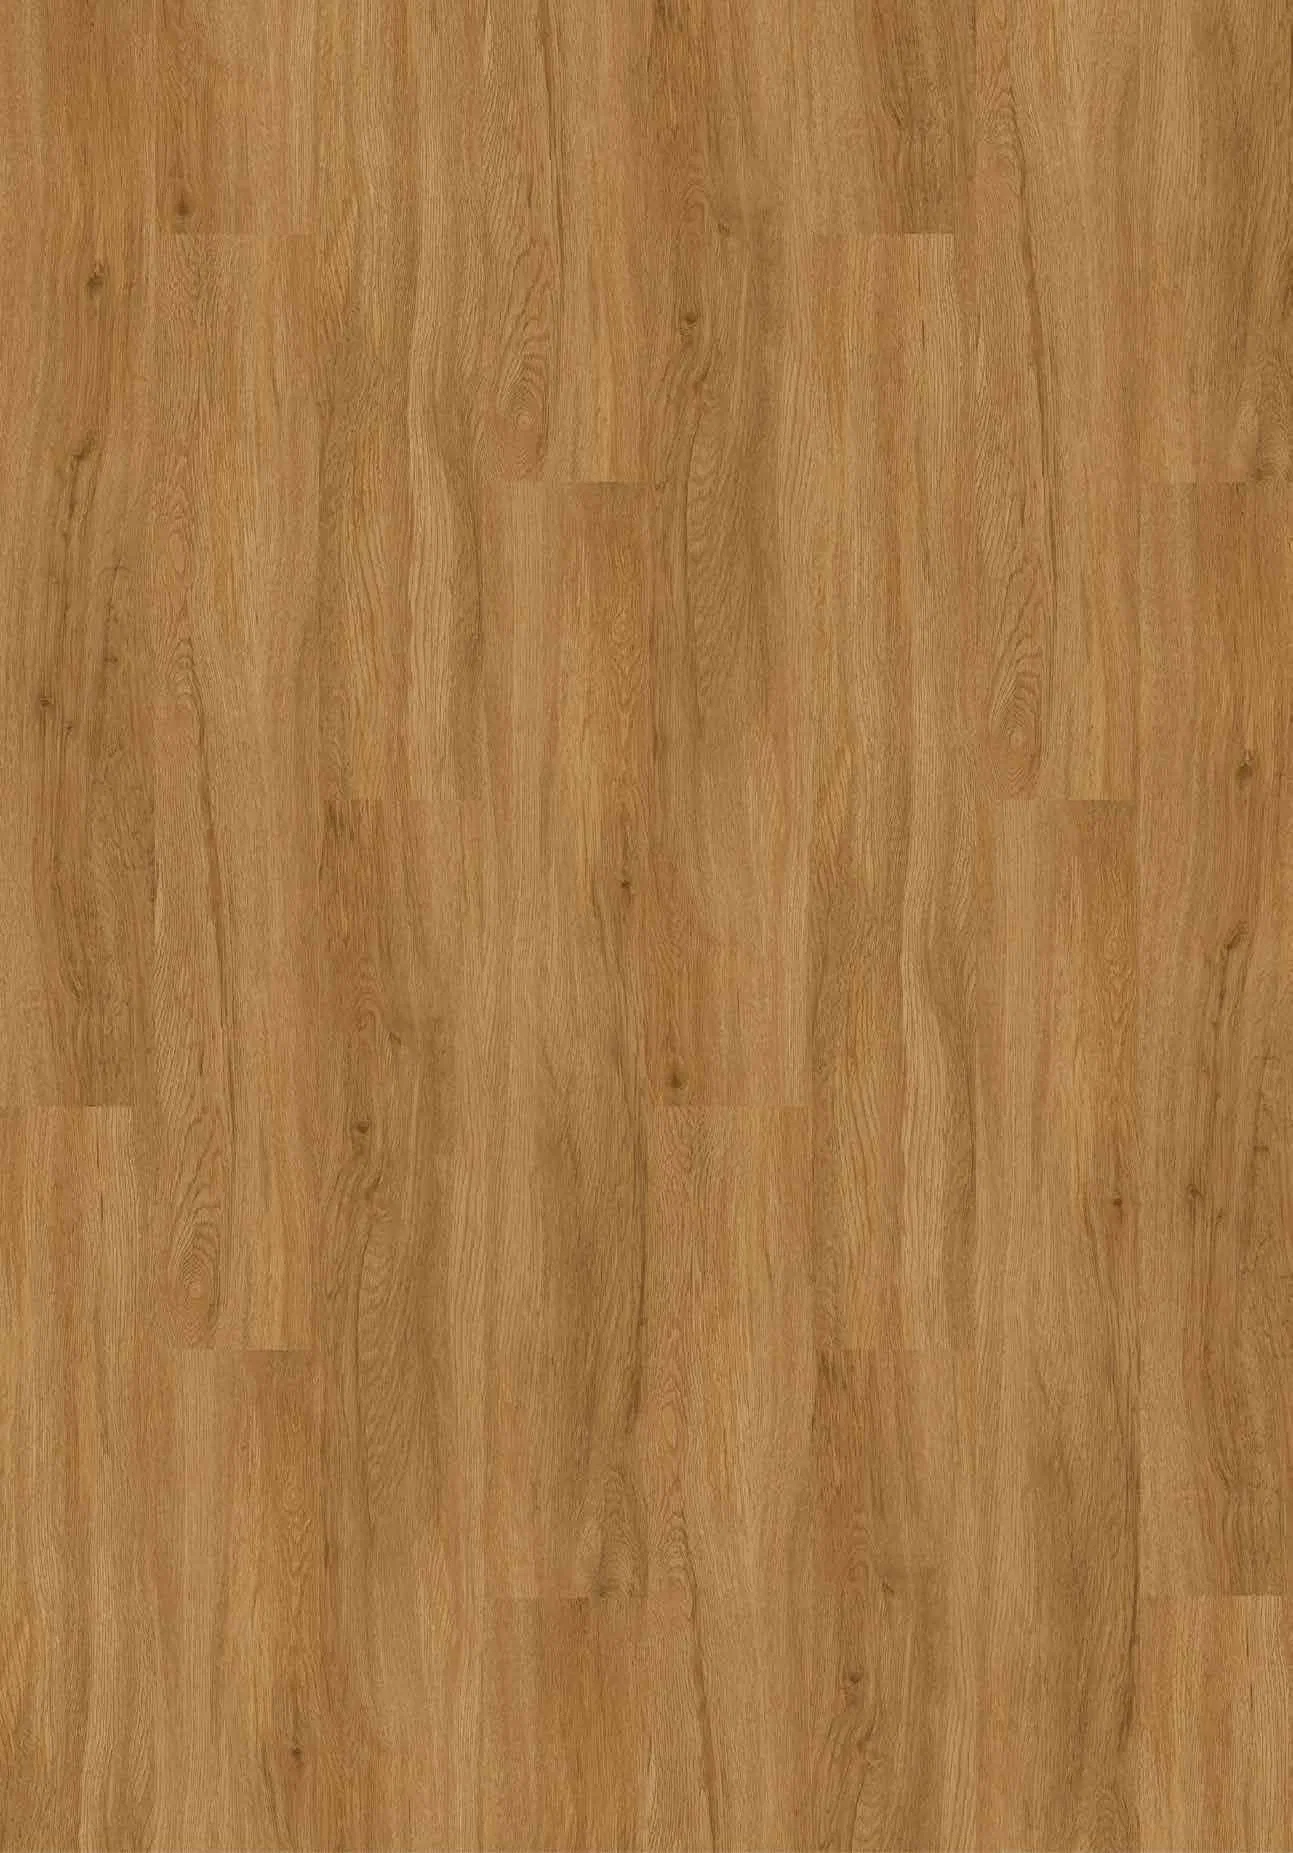 Wood Grain Spc Rigid Core Luxury Vinyl Flooring Waterproof Lvt Floor for Home Decoration and Commercial